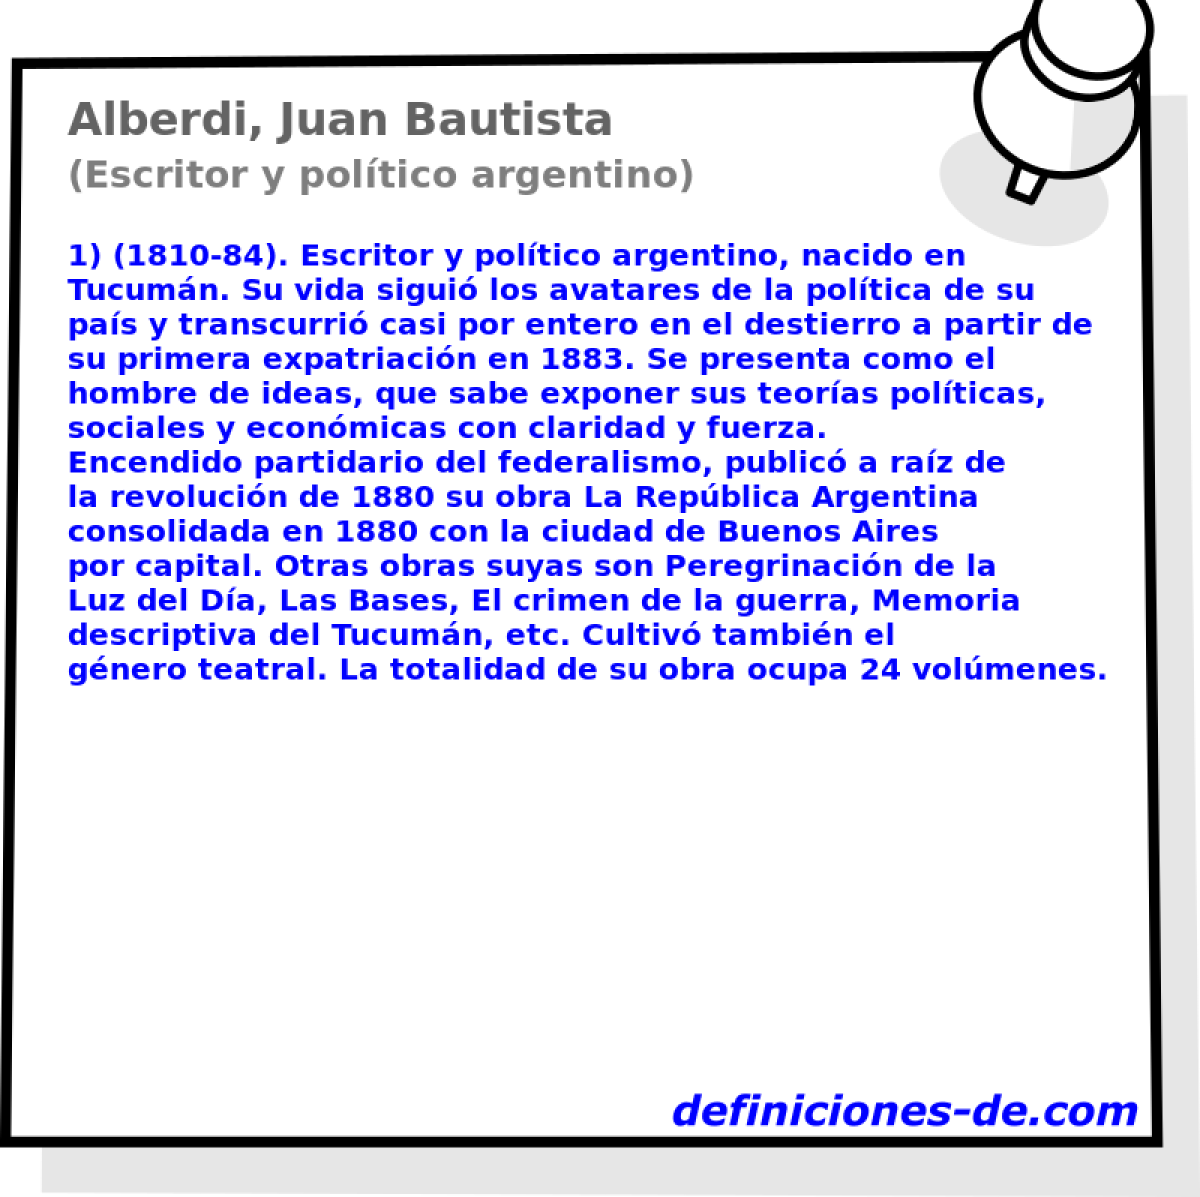 Alberdi, Juan Bautista (Escritor y poltico argentino)